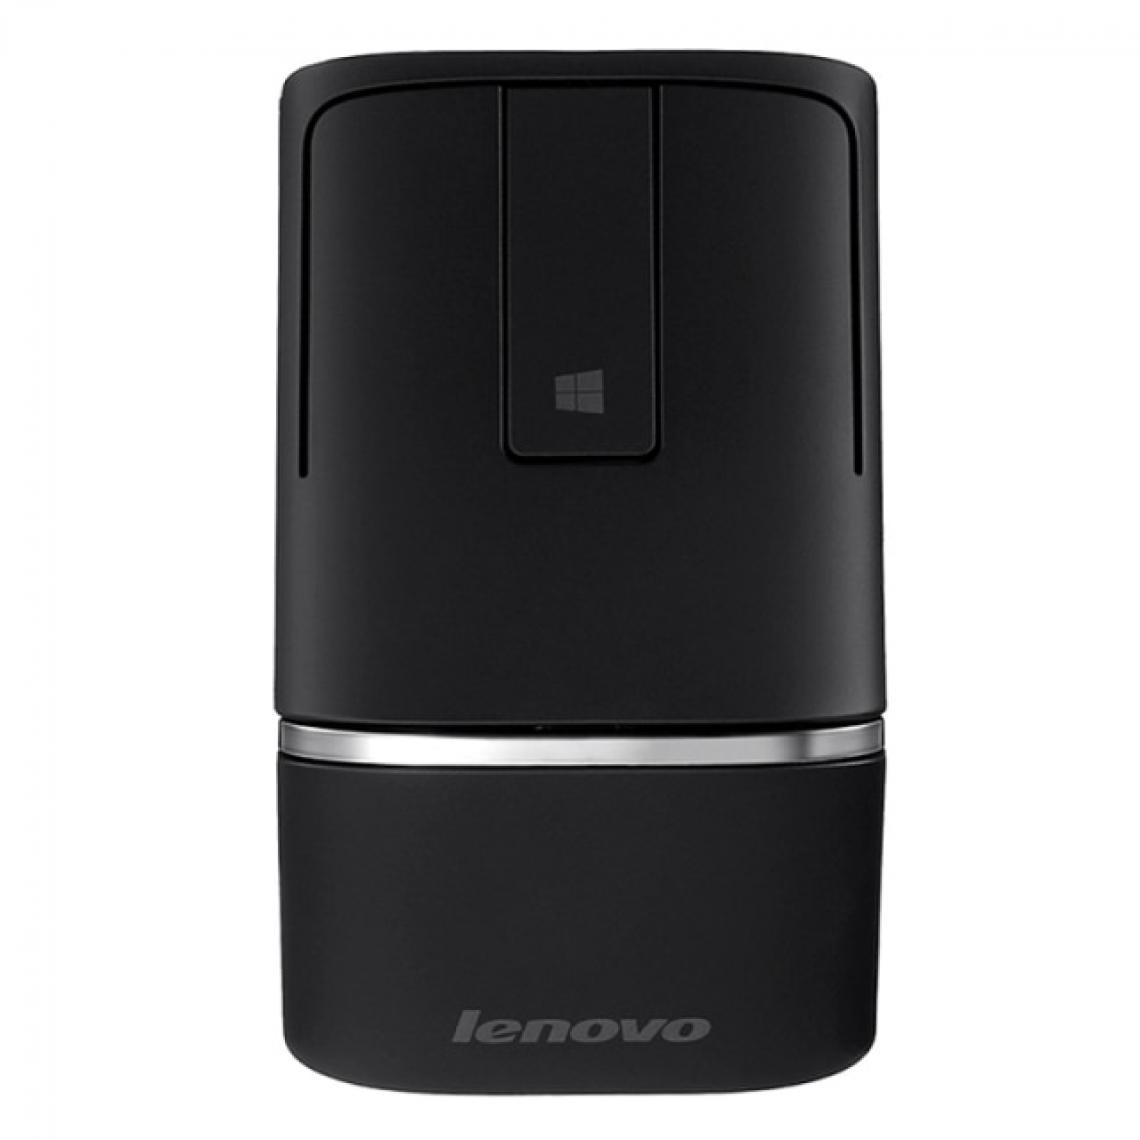 Universal - Souris sans fil avec support PPT 1200dpi 2.4G/bt4.0 Dual Mode Ergonomic Touch Lever pour fenêtres | Mouse (noir) - Souris